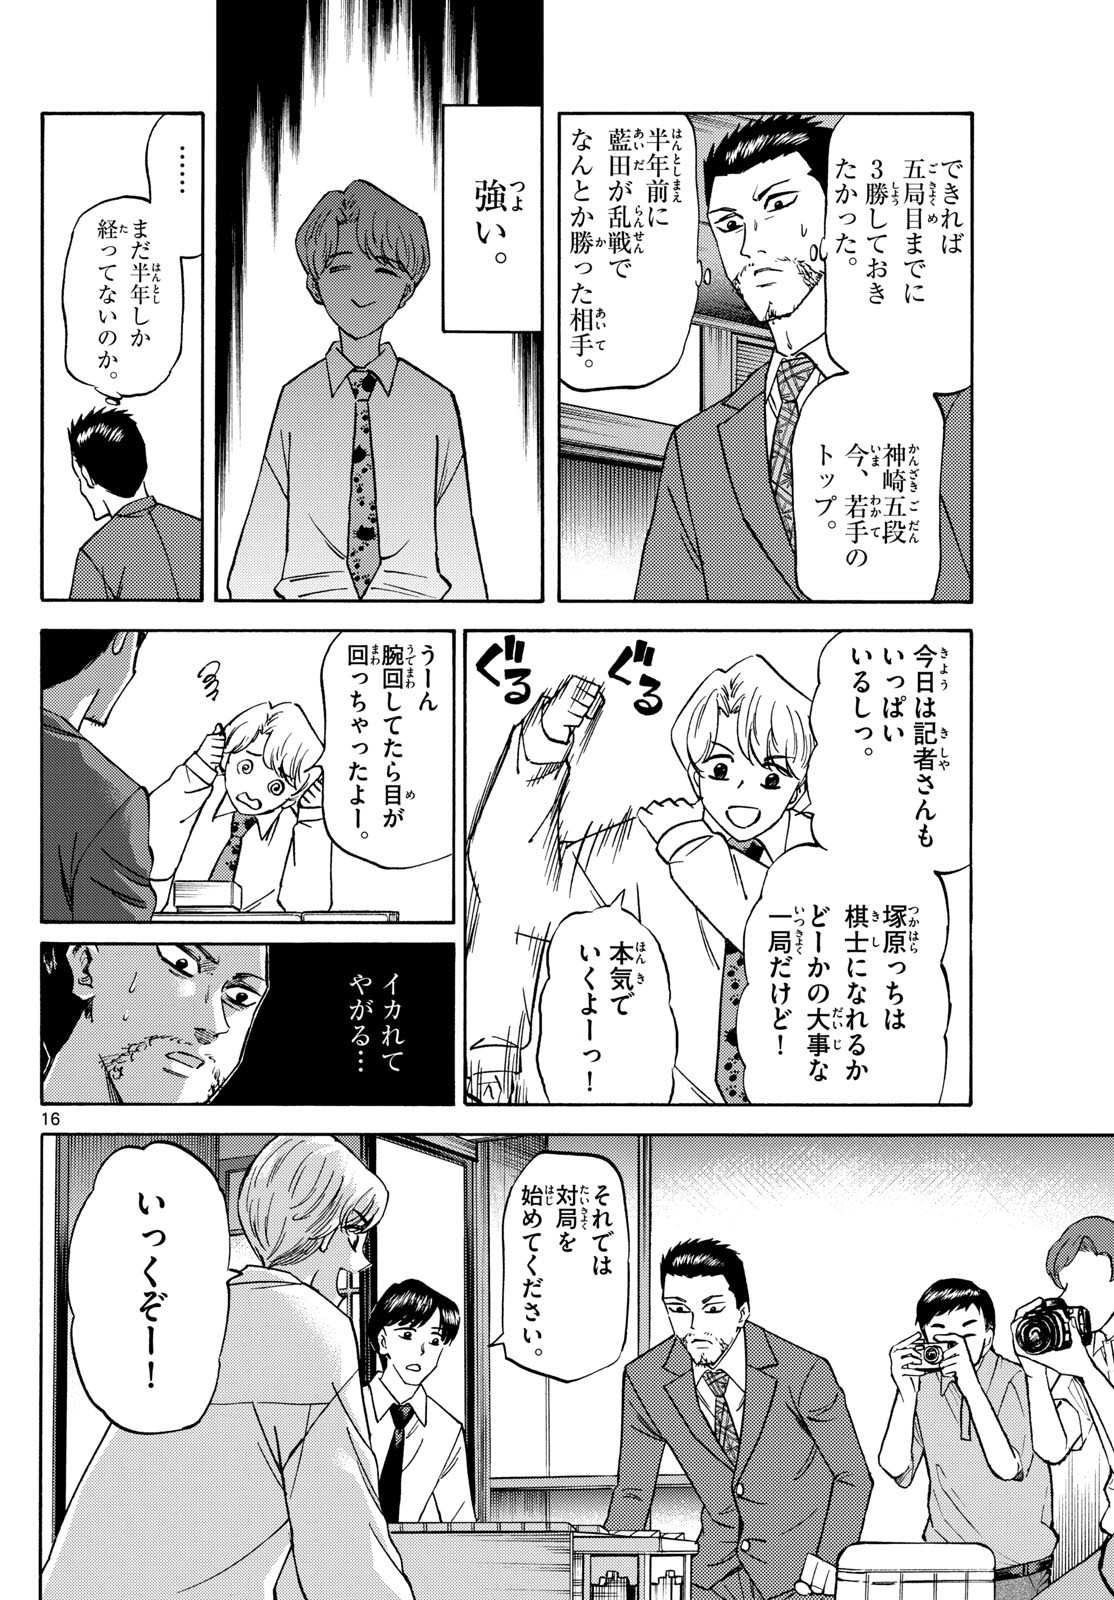 Ryu-to-Ichigo - Chapter 152 - Page 16